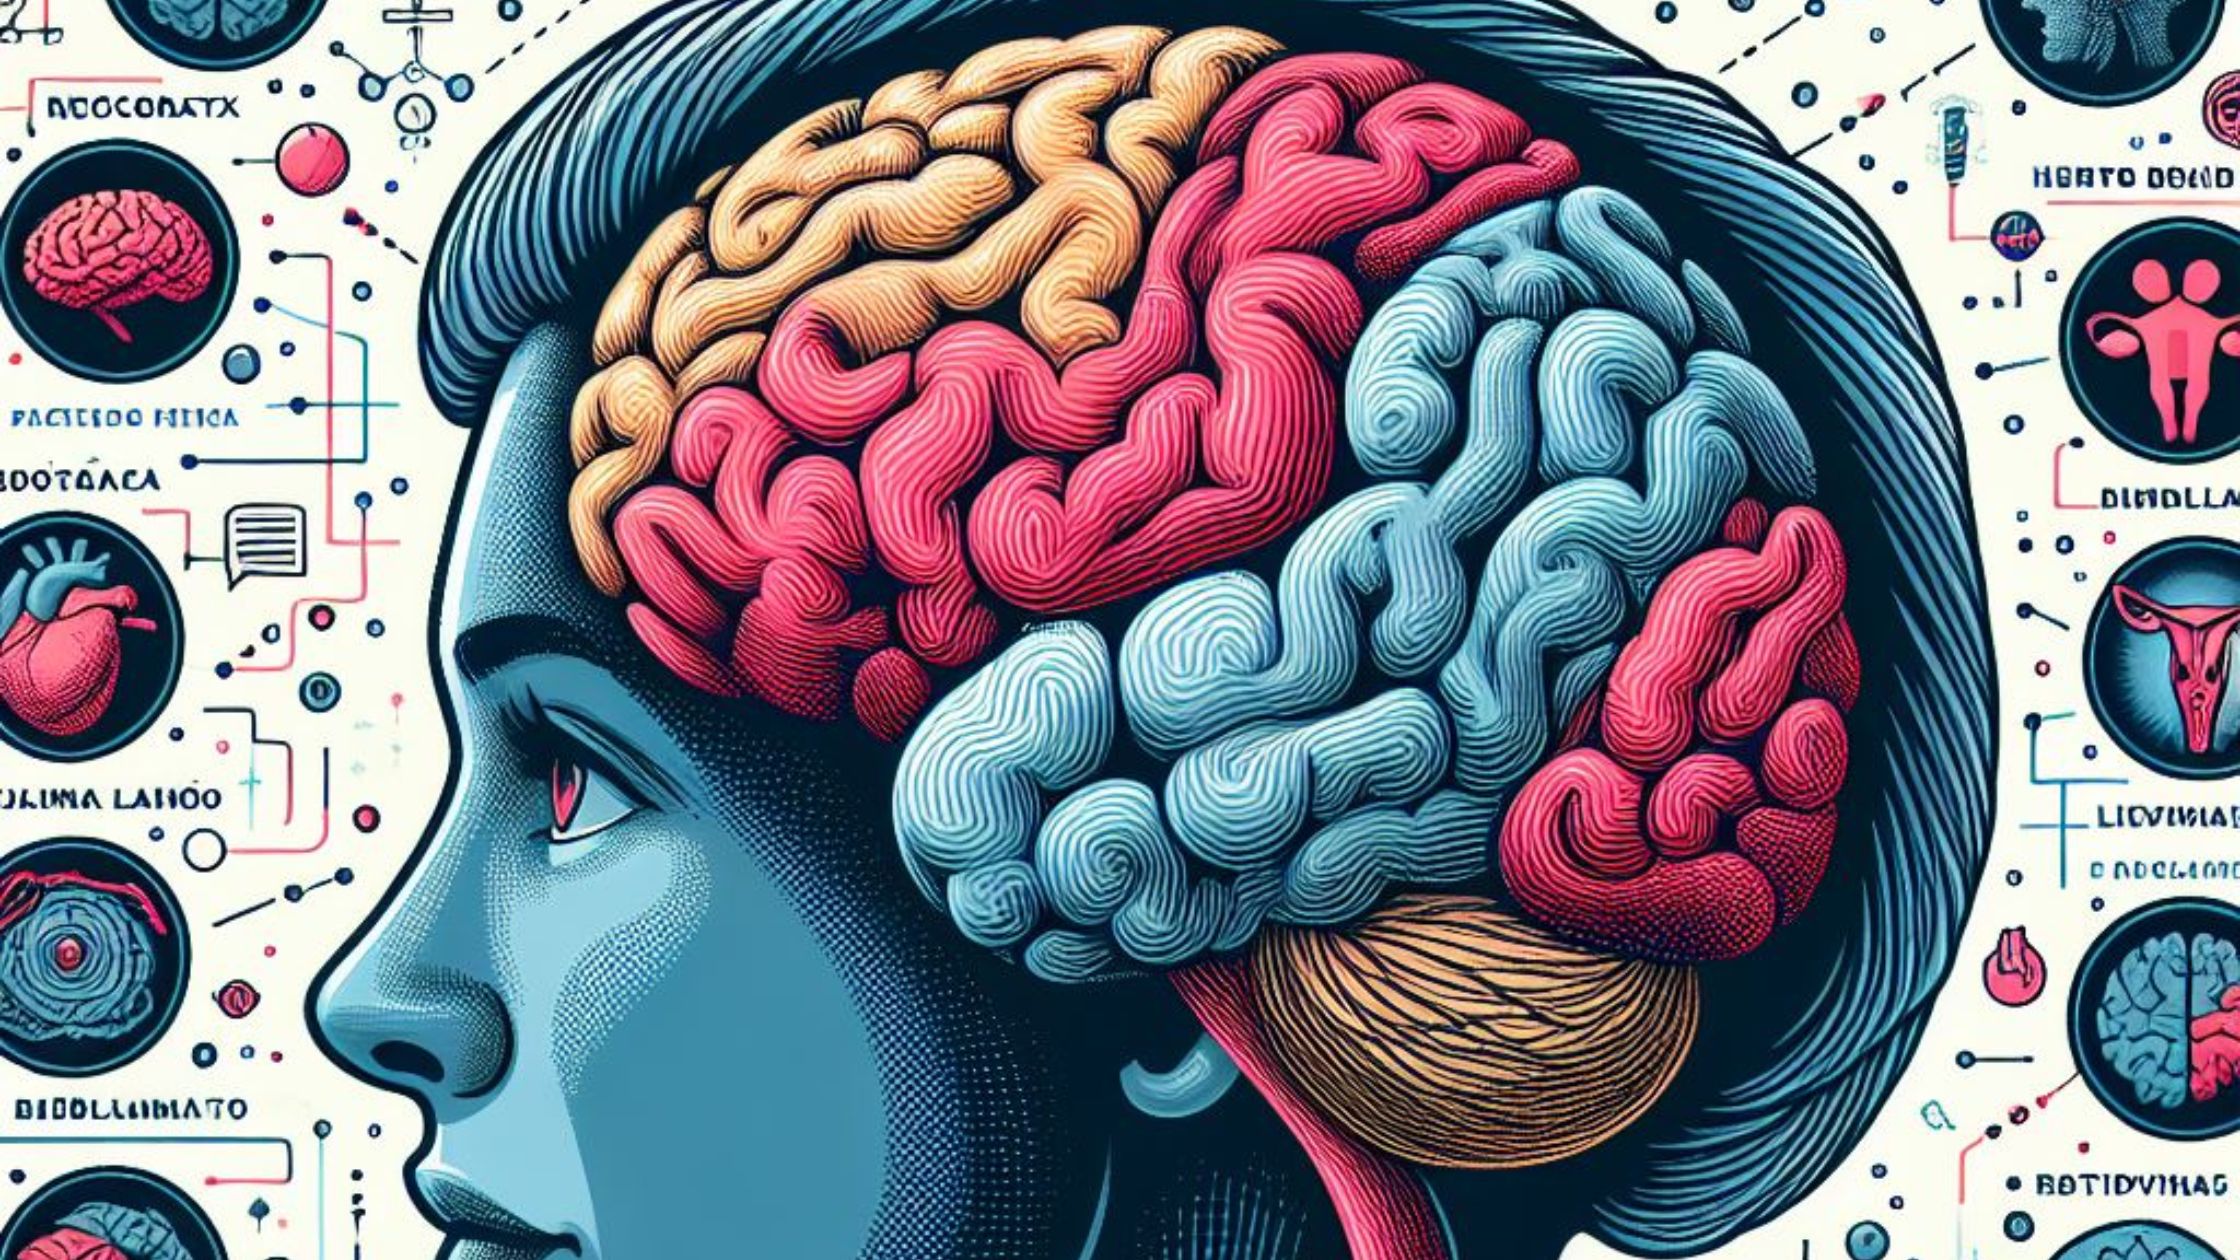 Neocórtex: área pensante ou racional Cérebro Límbico: sensivo e emotivo, a parte que lida com emoções mais complexas Cérebro Reptiliano: instintivo, onde há os reflexos relacionados às emoções primitivas.